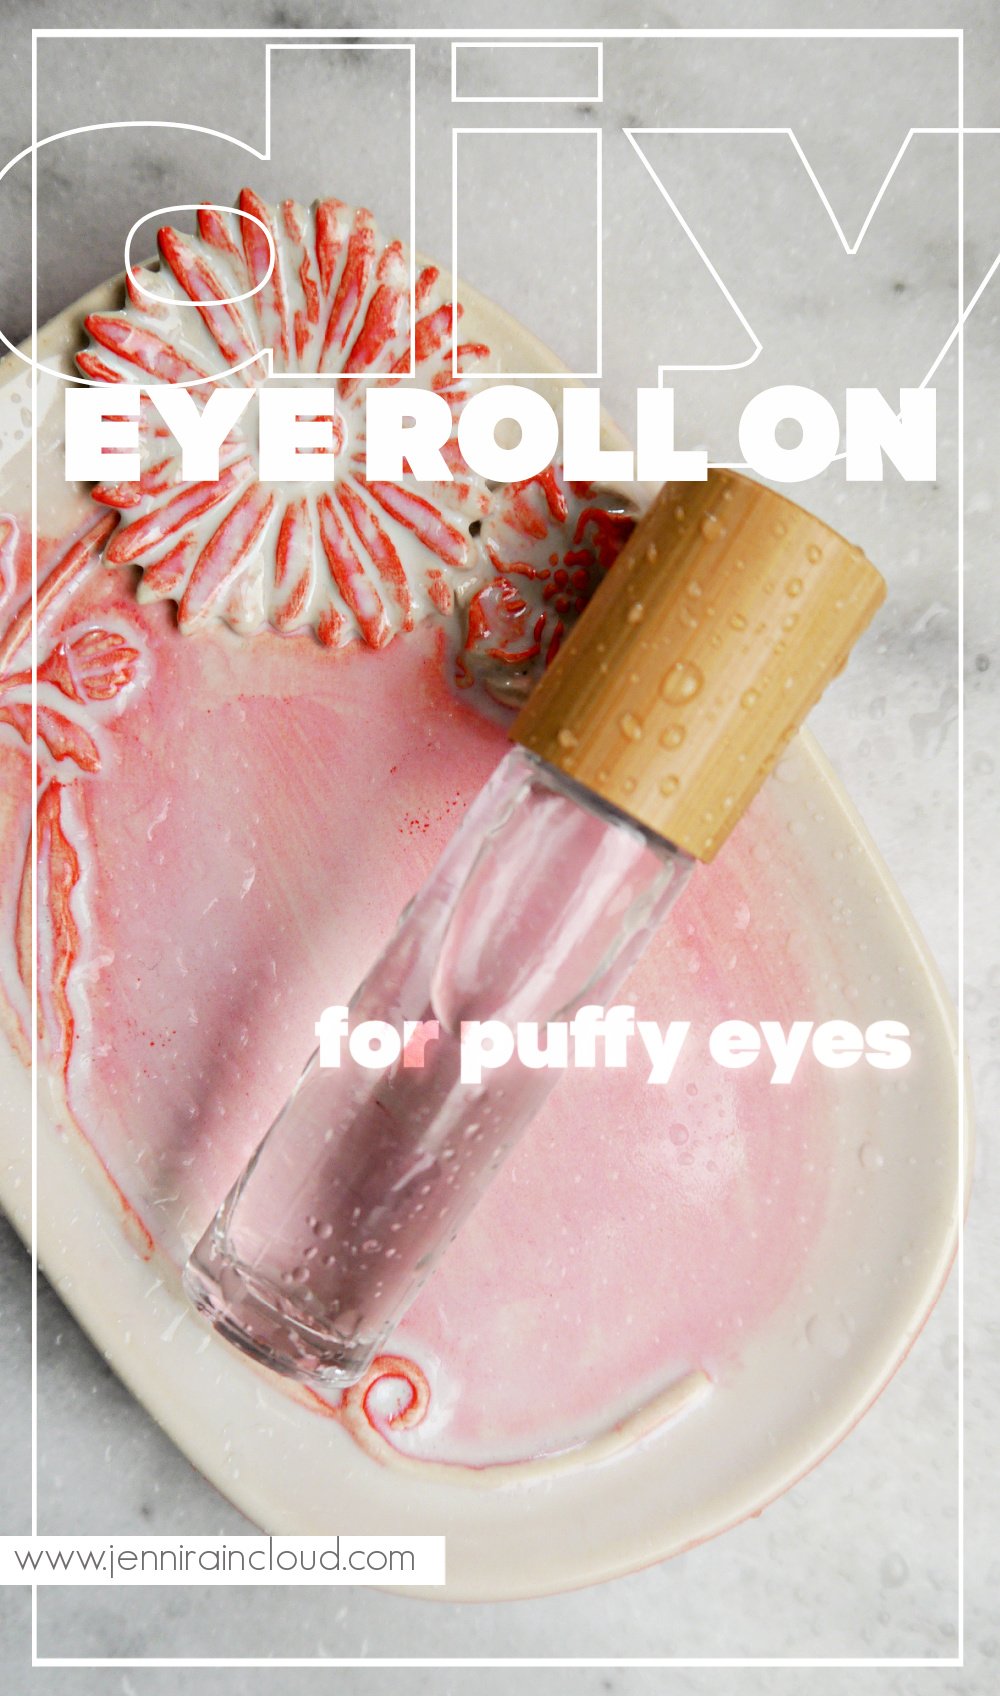 DIY Eye Roll On for Puffy Eyes